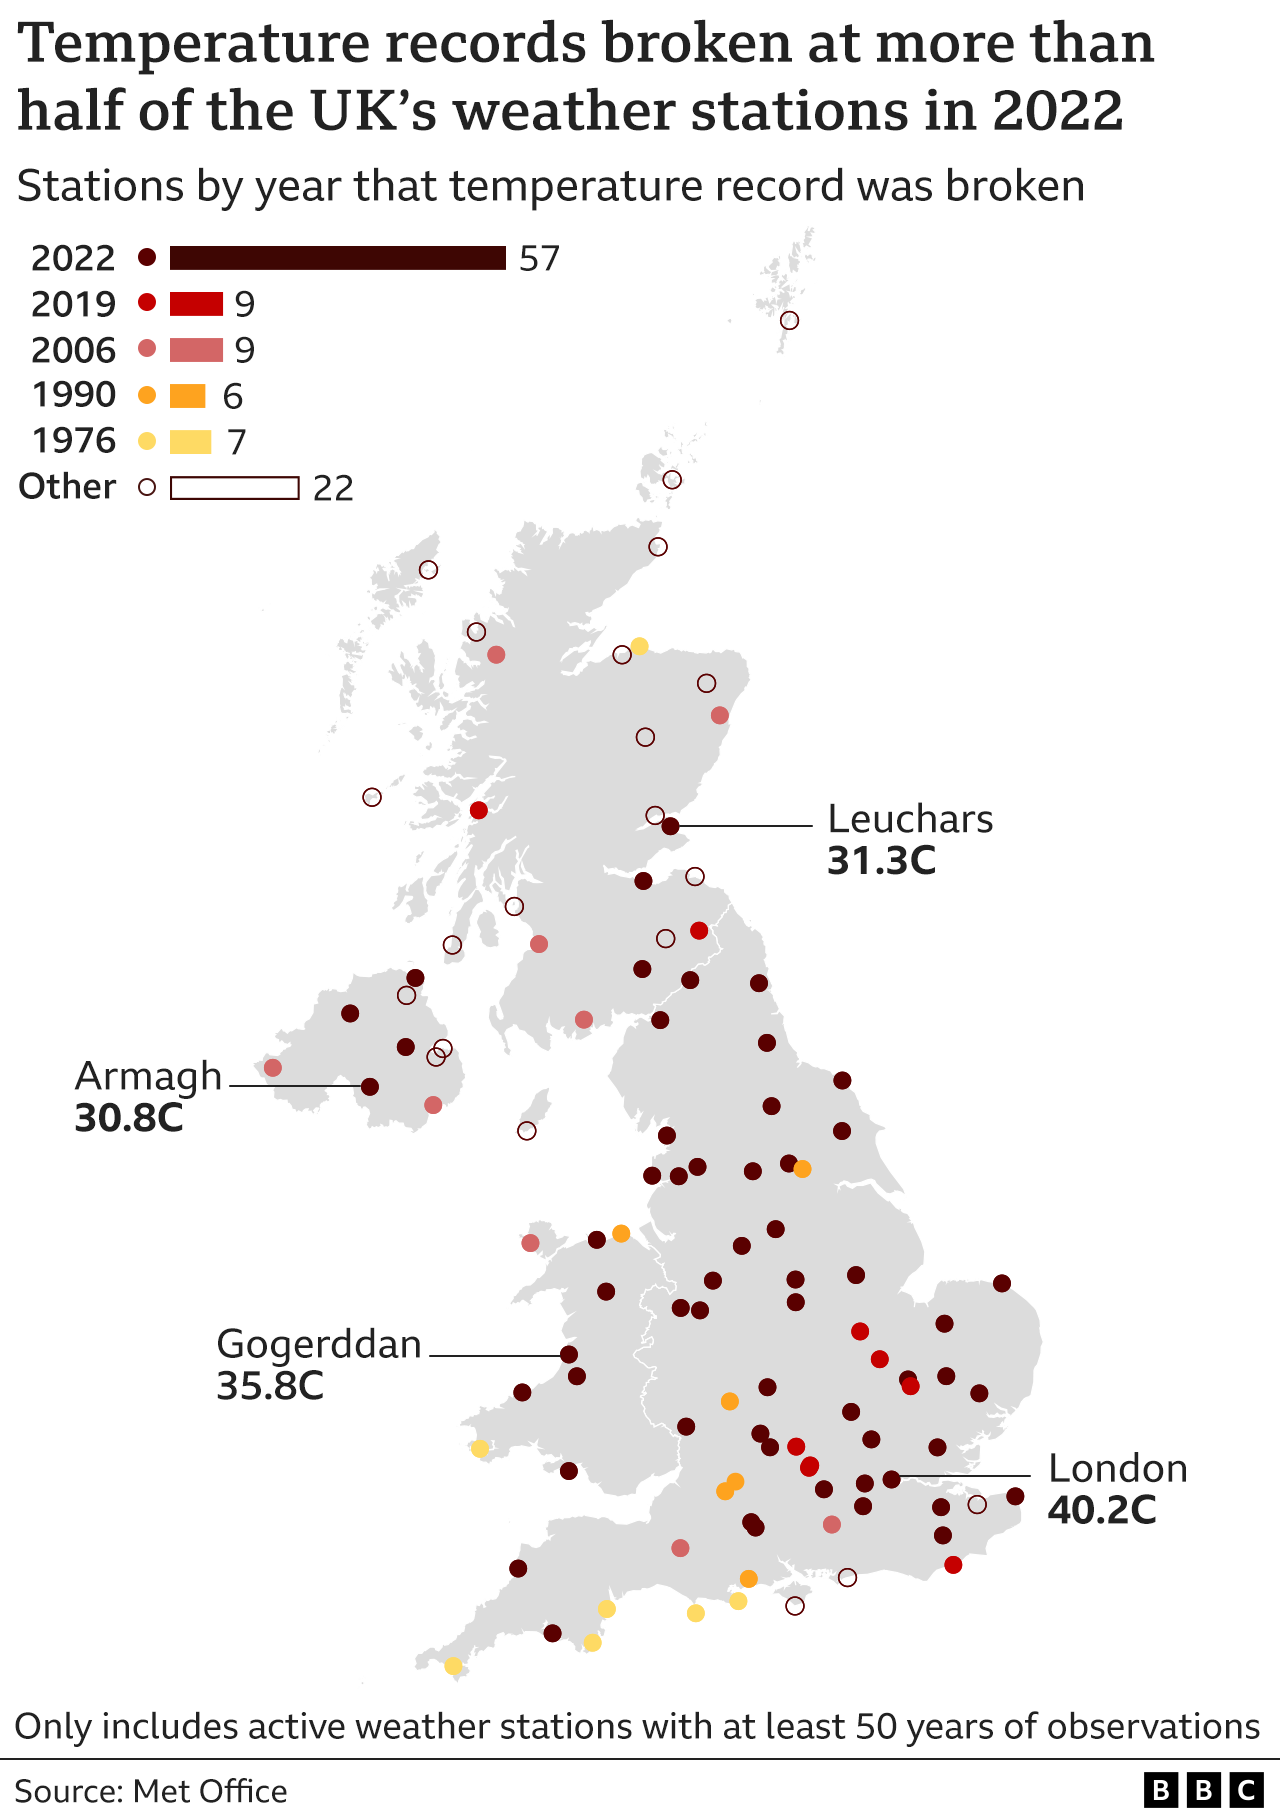 Карта Великобритании, показывающая, что более половины (57 из 109) метеостанций с данными как минимум за 50 лет побили свой исторический максимум в 2022 году. Другими годами, в которых все еще остаются рекорды, являются 2019 и 2006 годы с девятью рекордами, а в 1990 году — шесть. и 1976 г. - 7. 22 рекорда, установленных в другие годы, все еще в силе